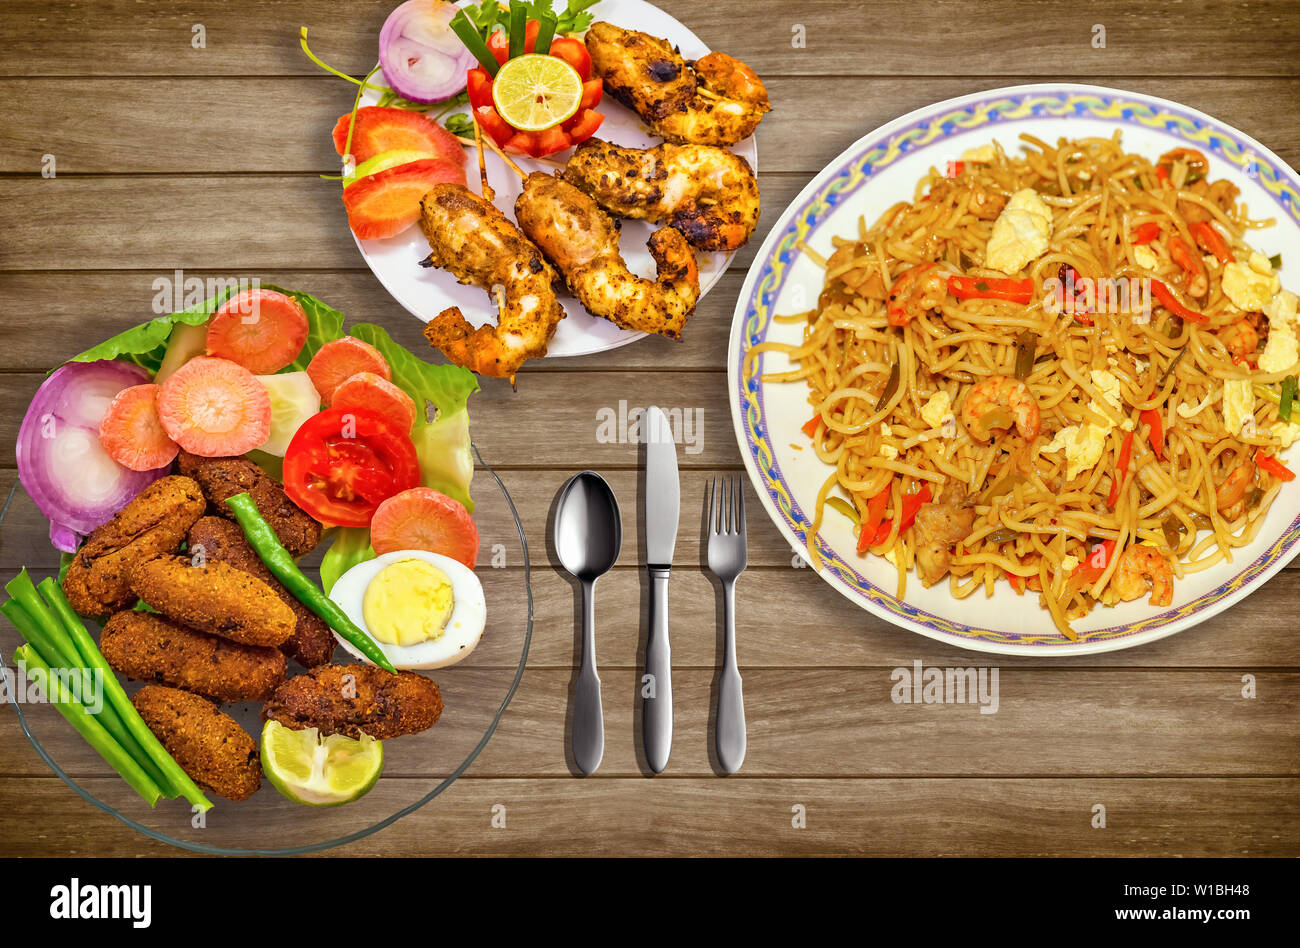 Indiens les repas de poulet épicé nouilles croustillantes chowmein avec les bâtonnets de poisson et crevettes frits servis avec salade. Banque D'Images